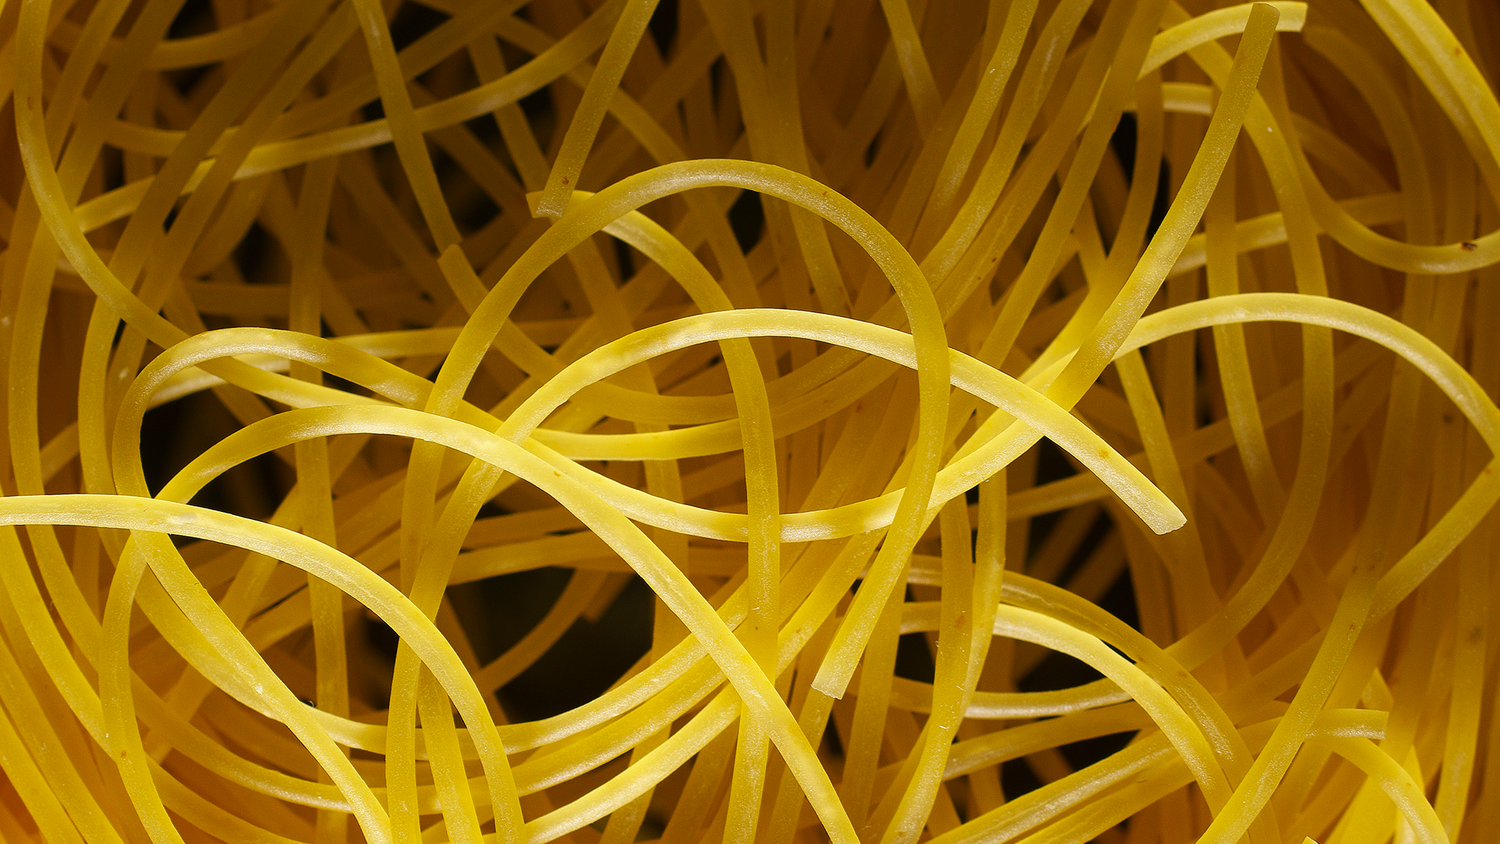 Spaghetti alle Vongole